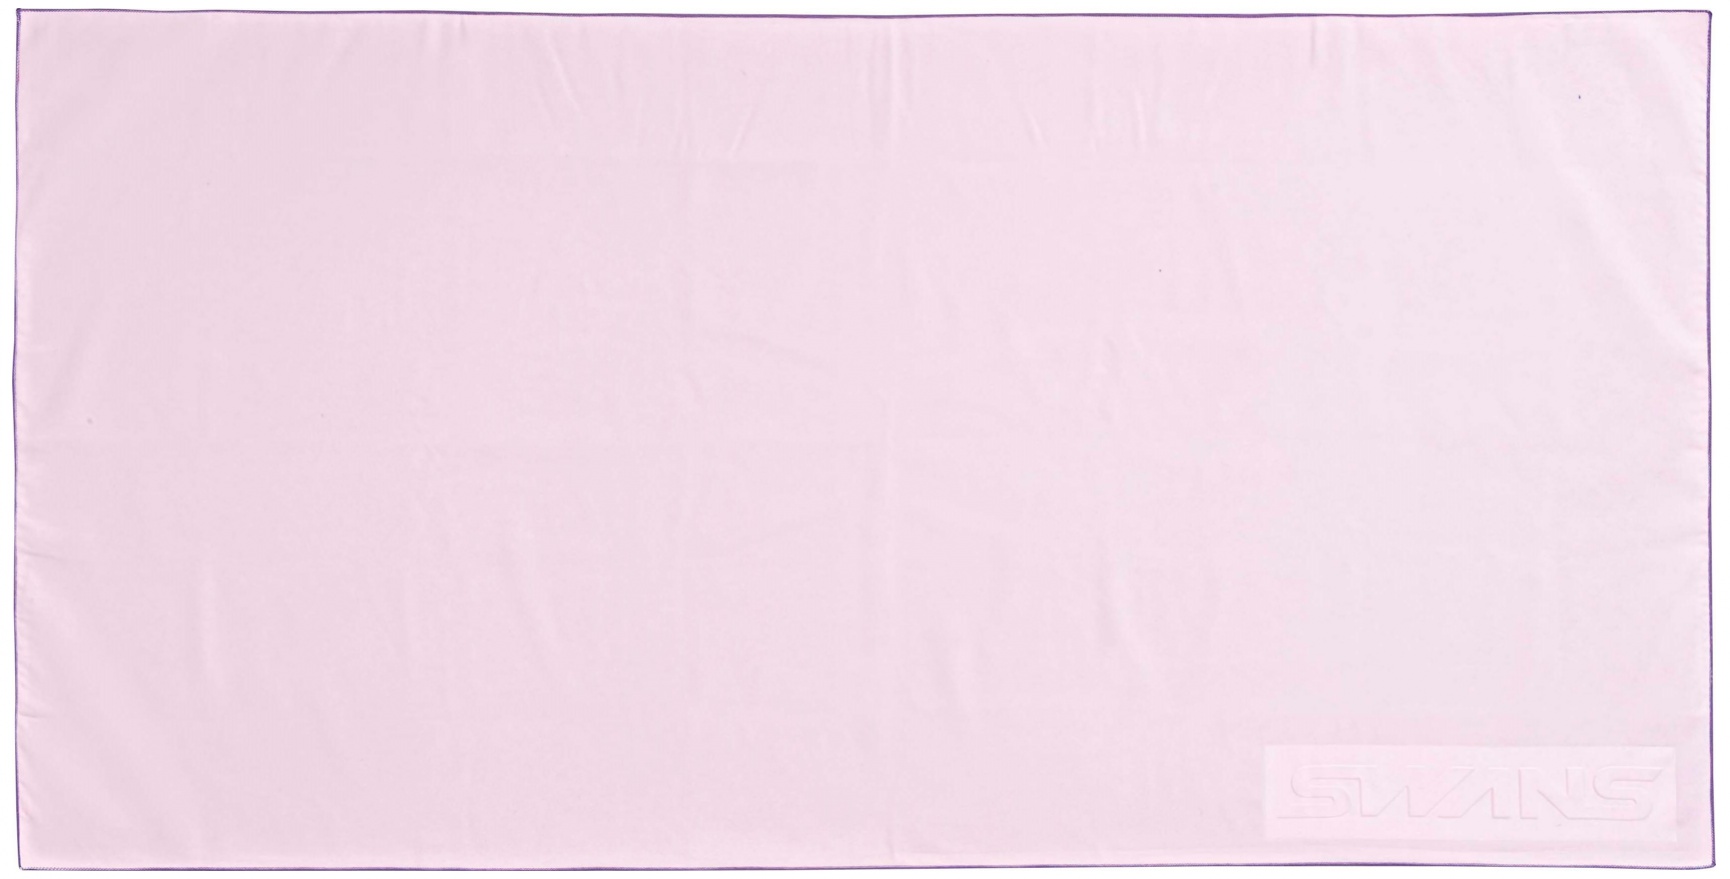 Swans microfiber sports towel sa-28 rózsaszín